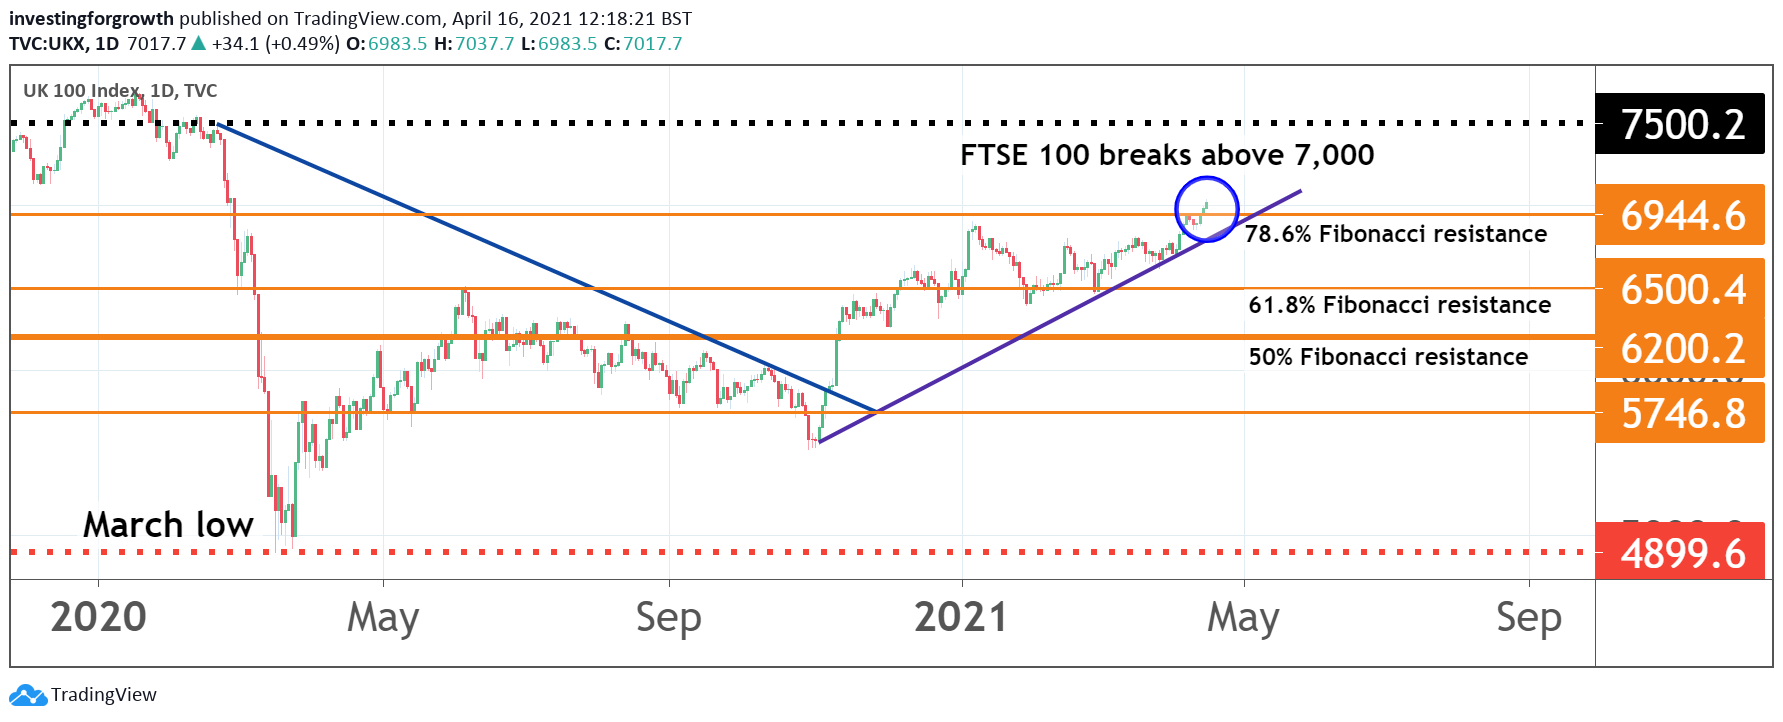 FTSE 100 above 7,000 16 April 2021